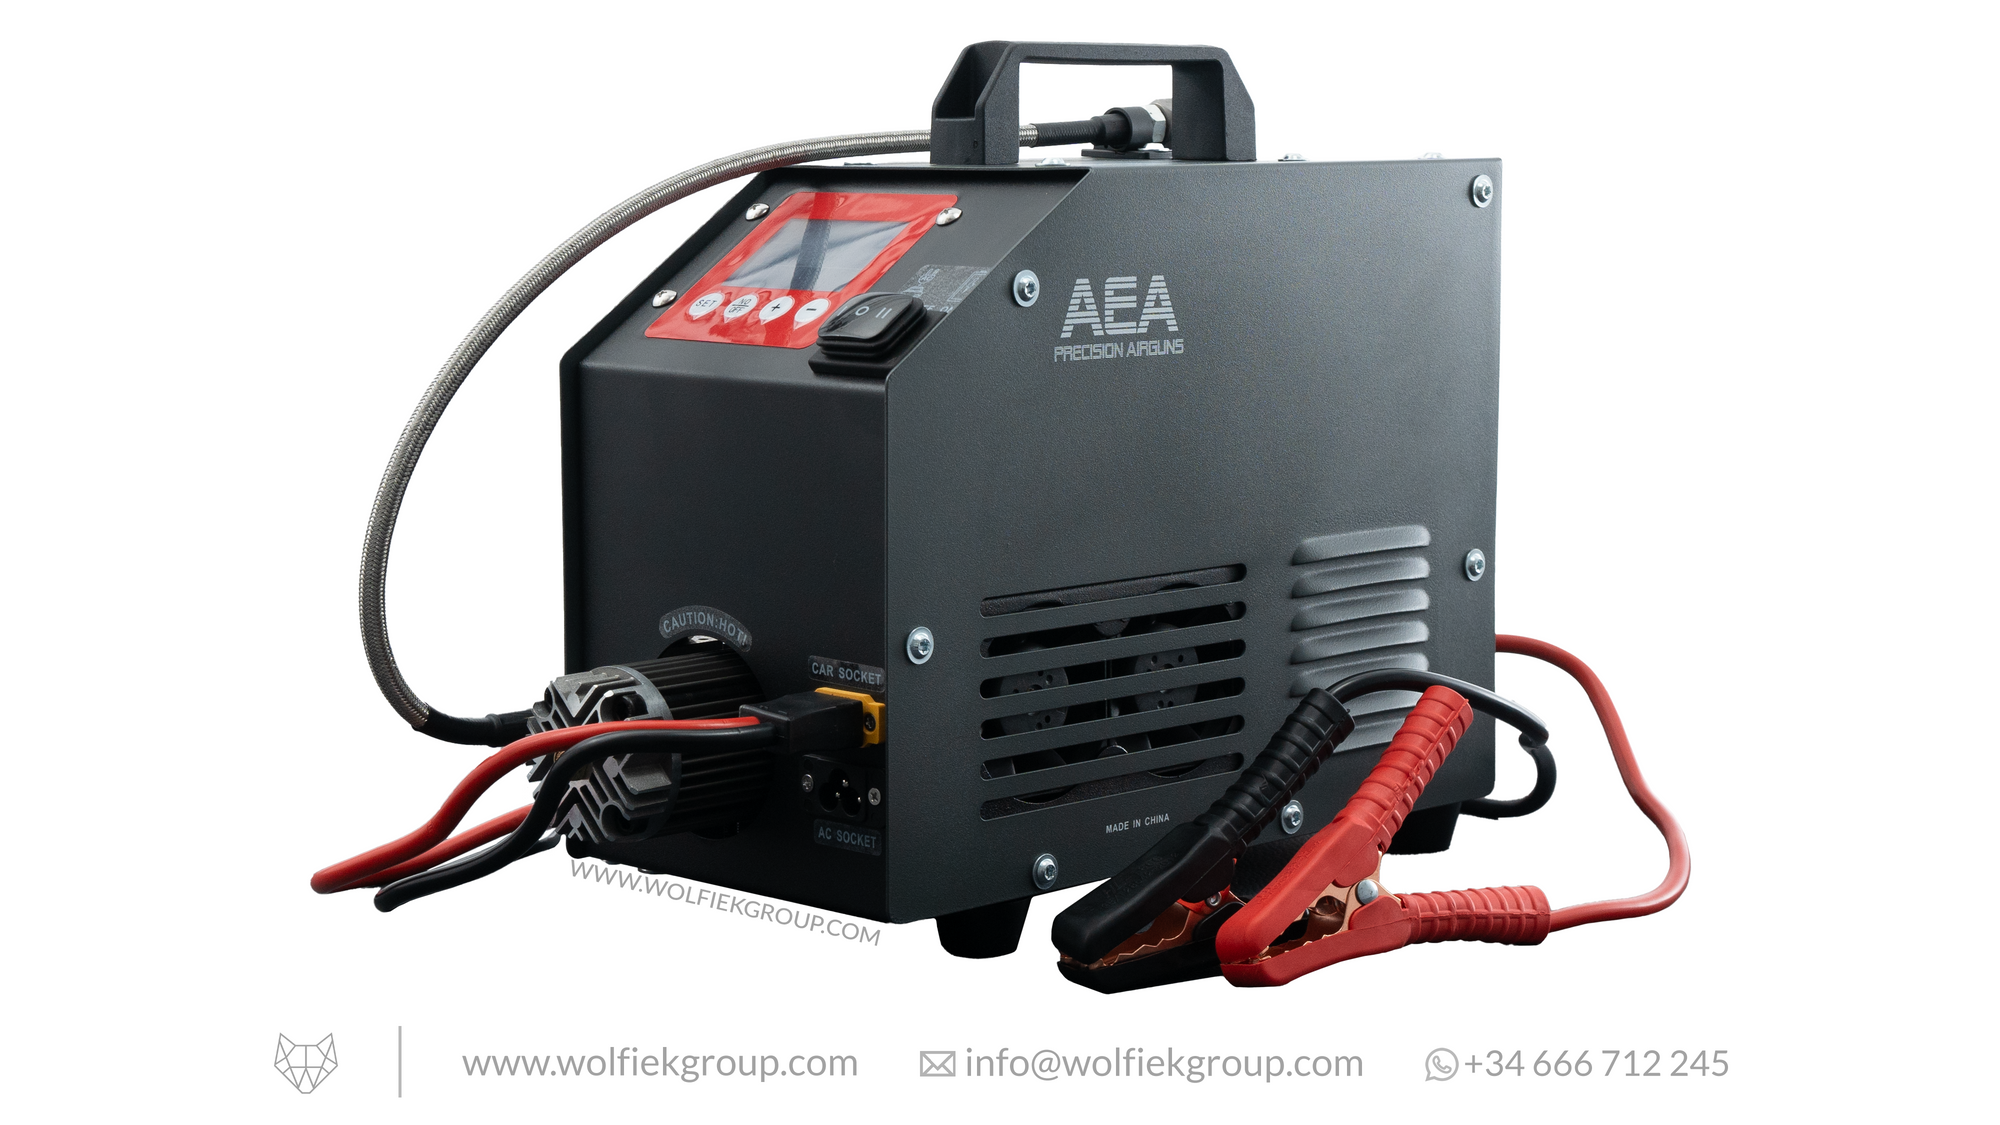 AEA Airguns 480 BAR/7000 PSI Air Compressor